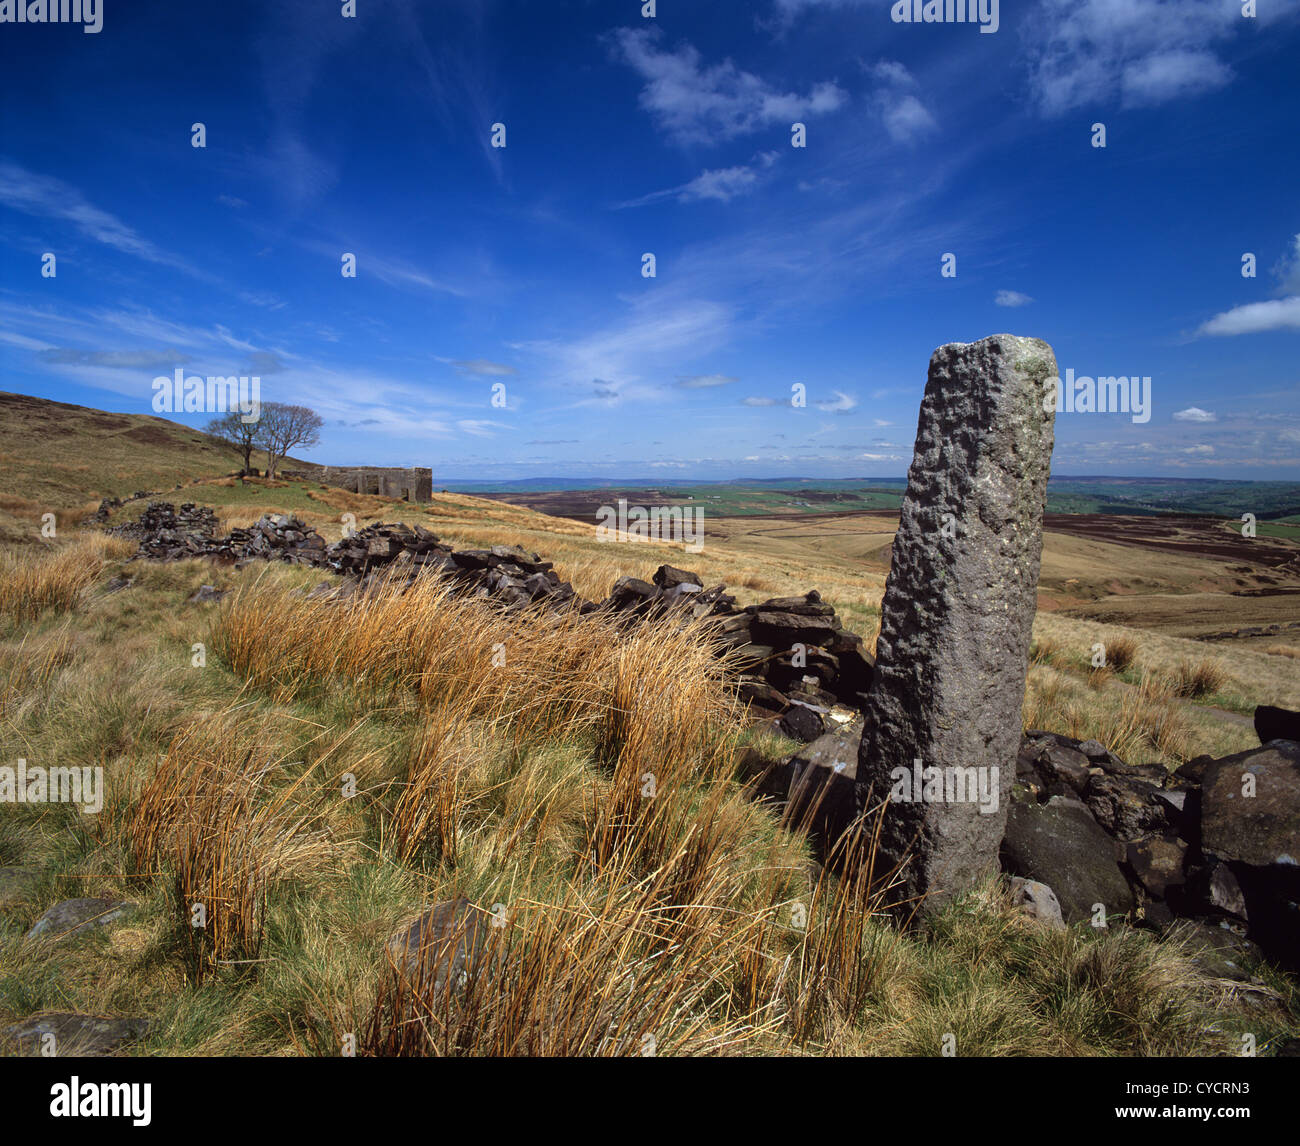 Spazzate dal vento withens top posizione per emily bronte del romanzo Wuthering Heights sopra Howarth Yorkshire Regno Unito Foto Stock